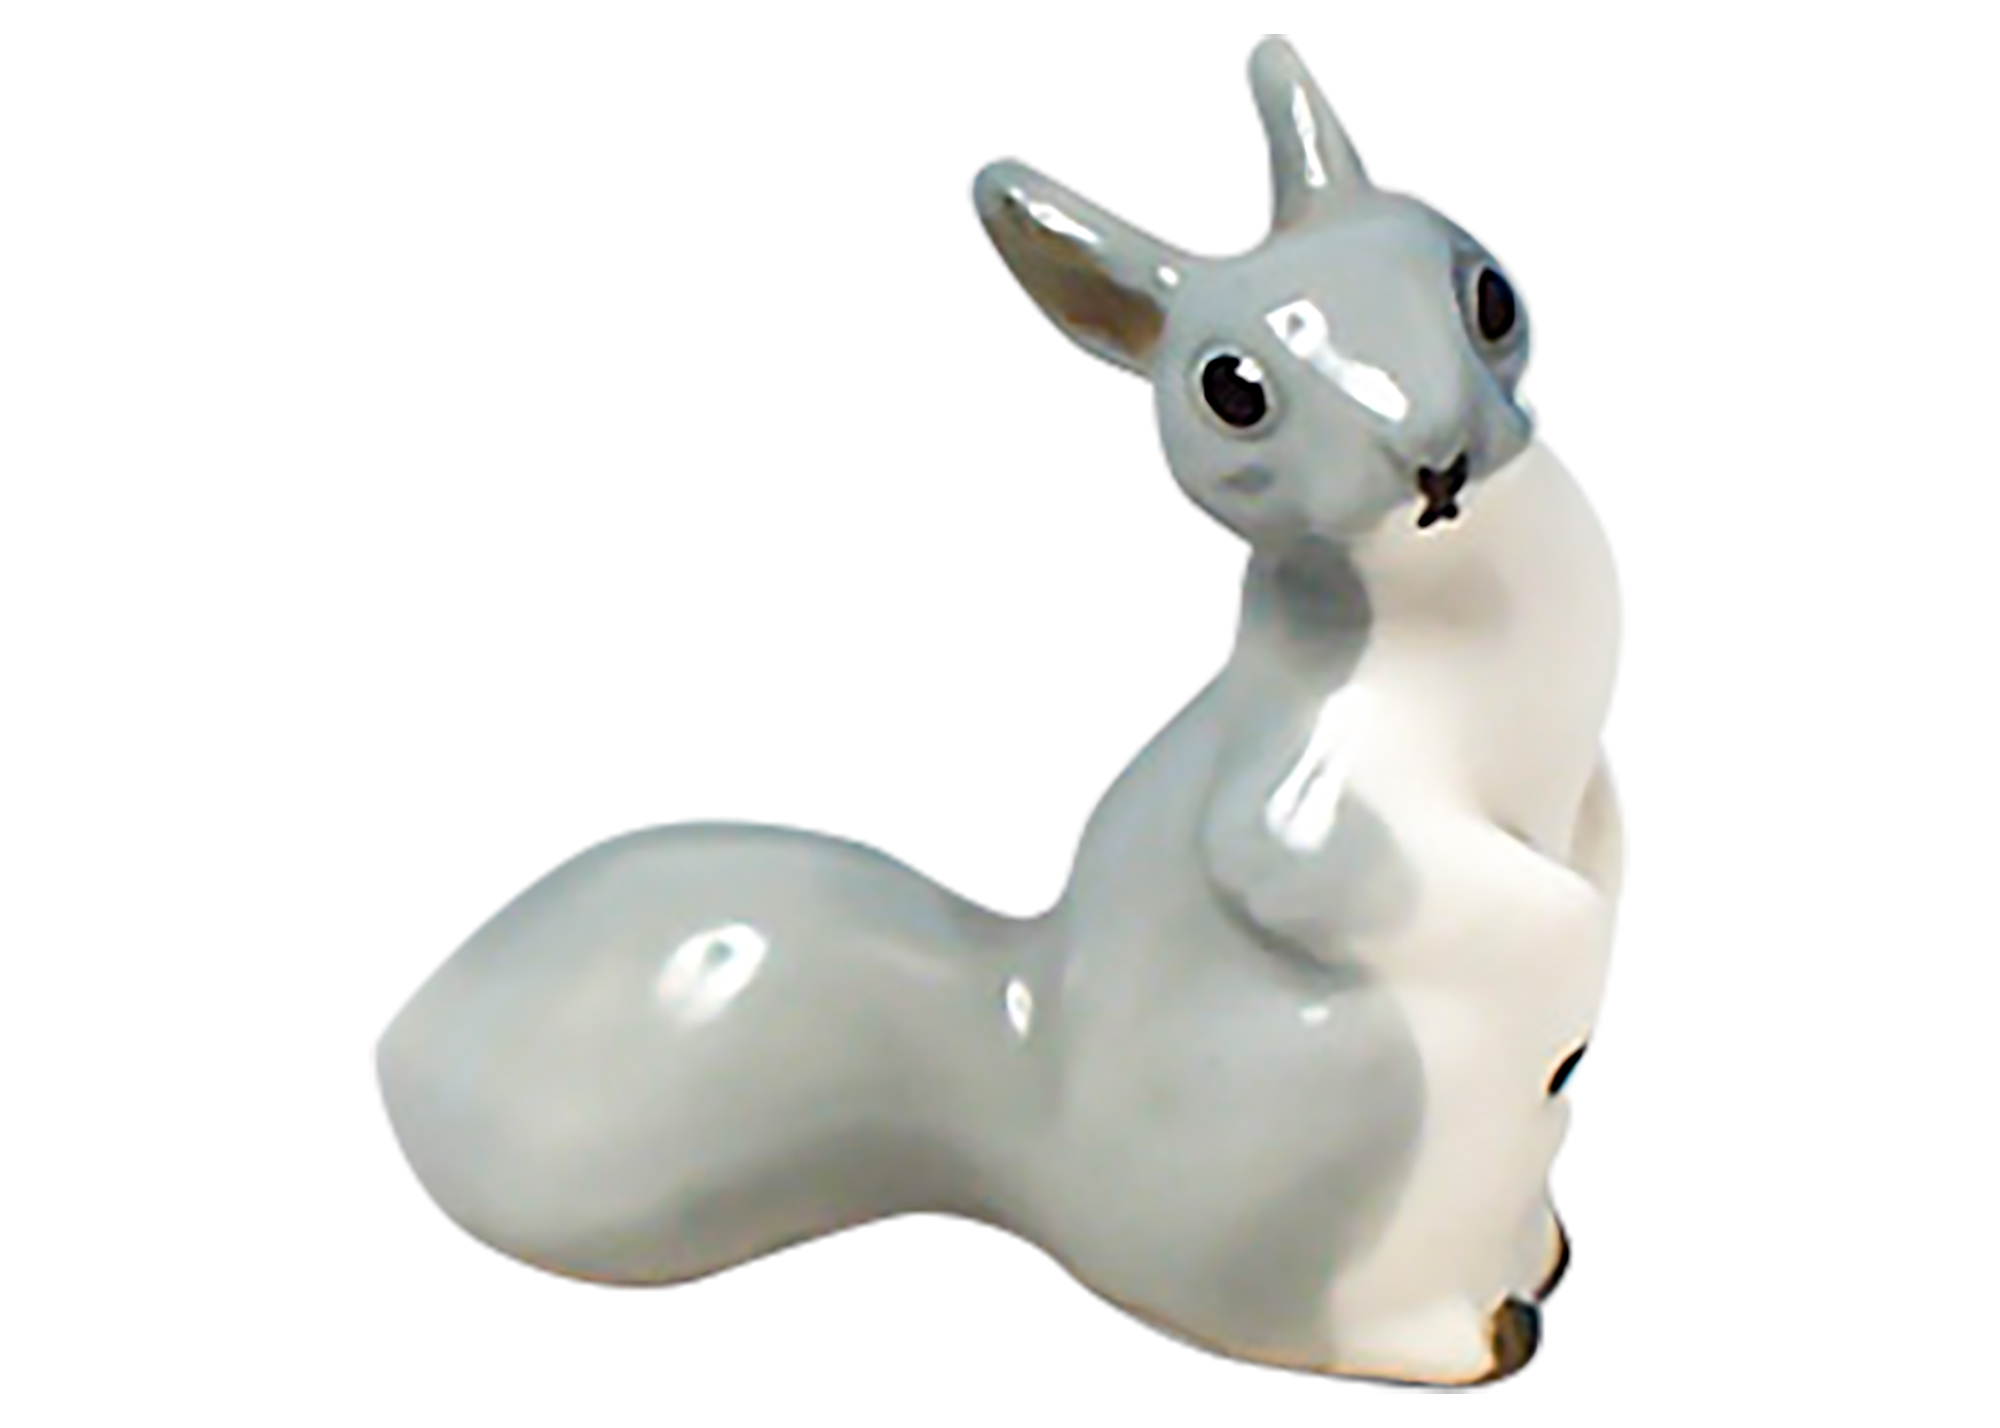 Buy Gray Squirrel Figurine at GoldenCockerel.com